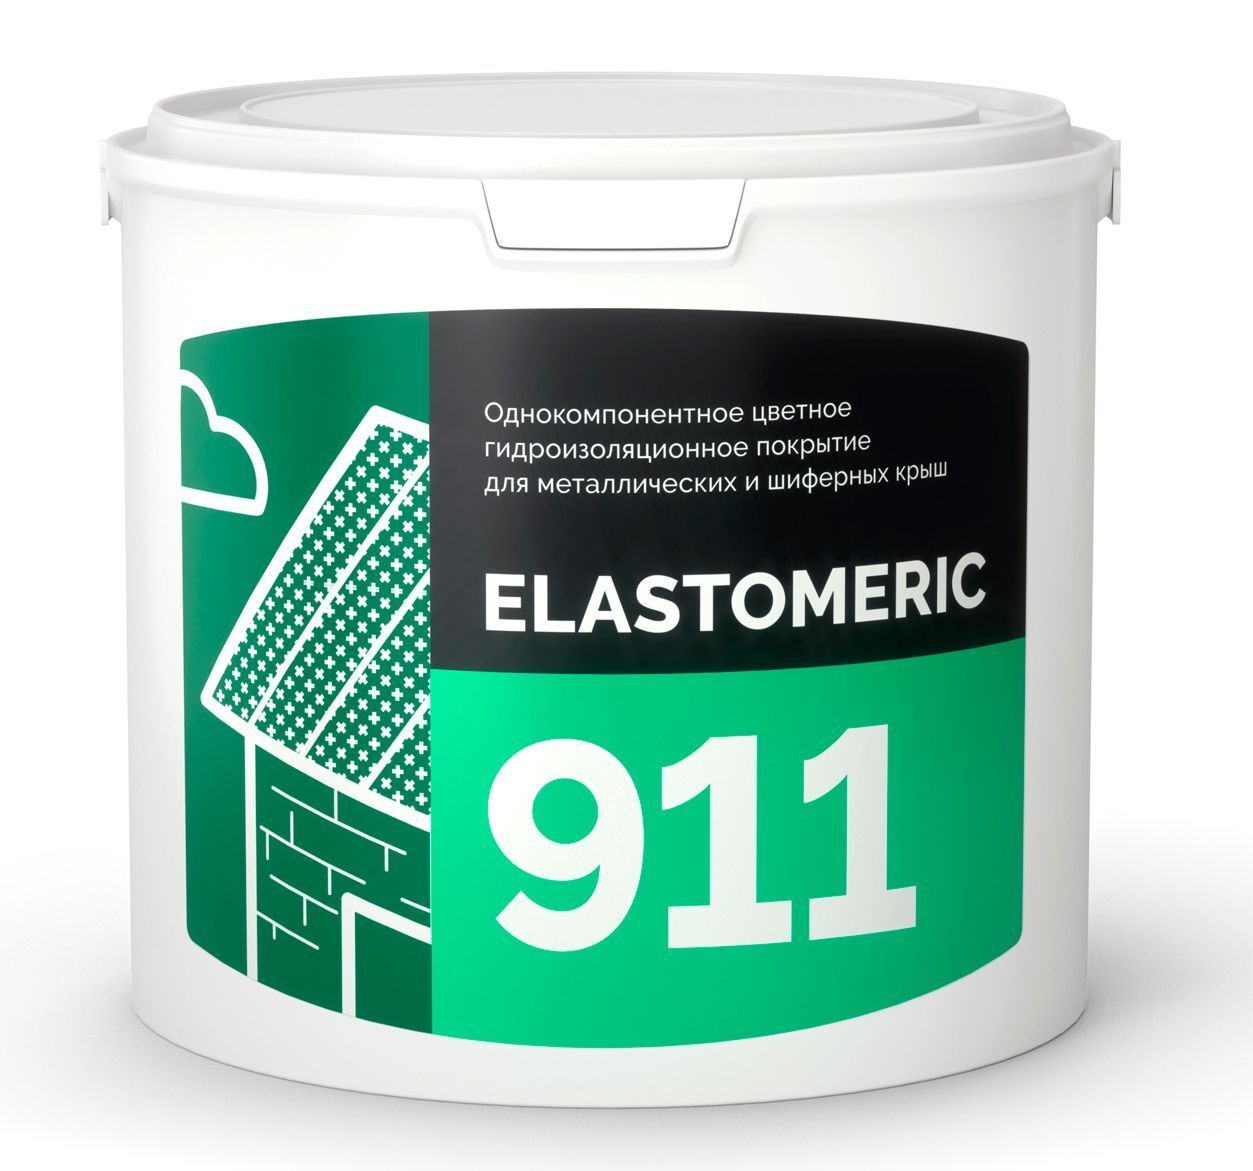 Гидроизоляция металлической и шиферной кровли - ELASTOMERIC 911 3 кг RAL 7016 антрацитово-серый